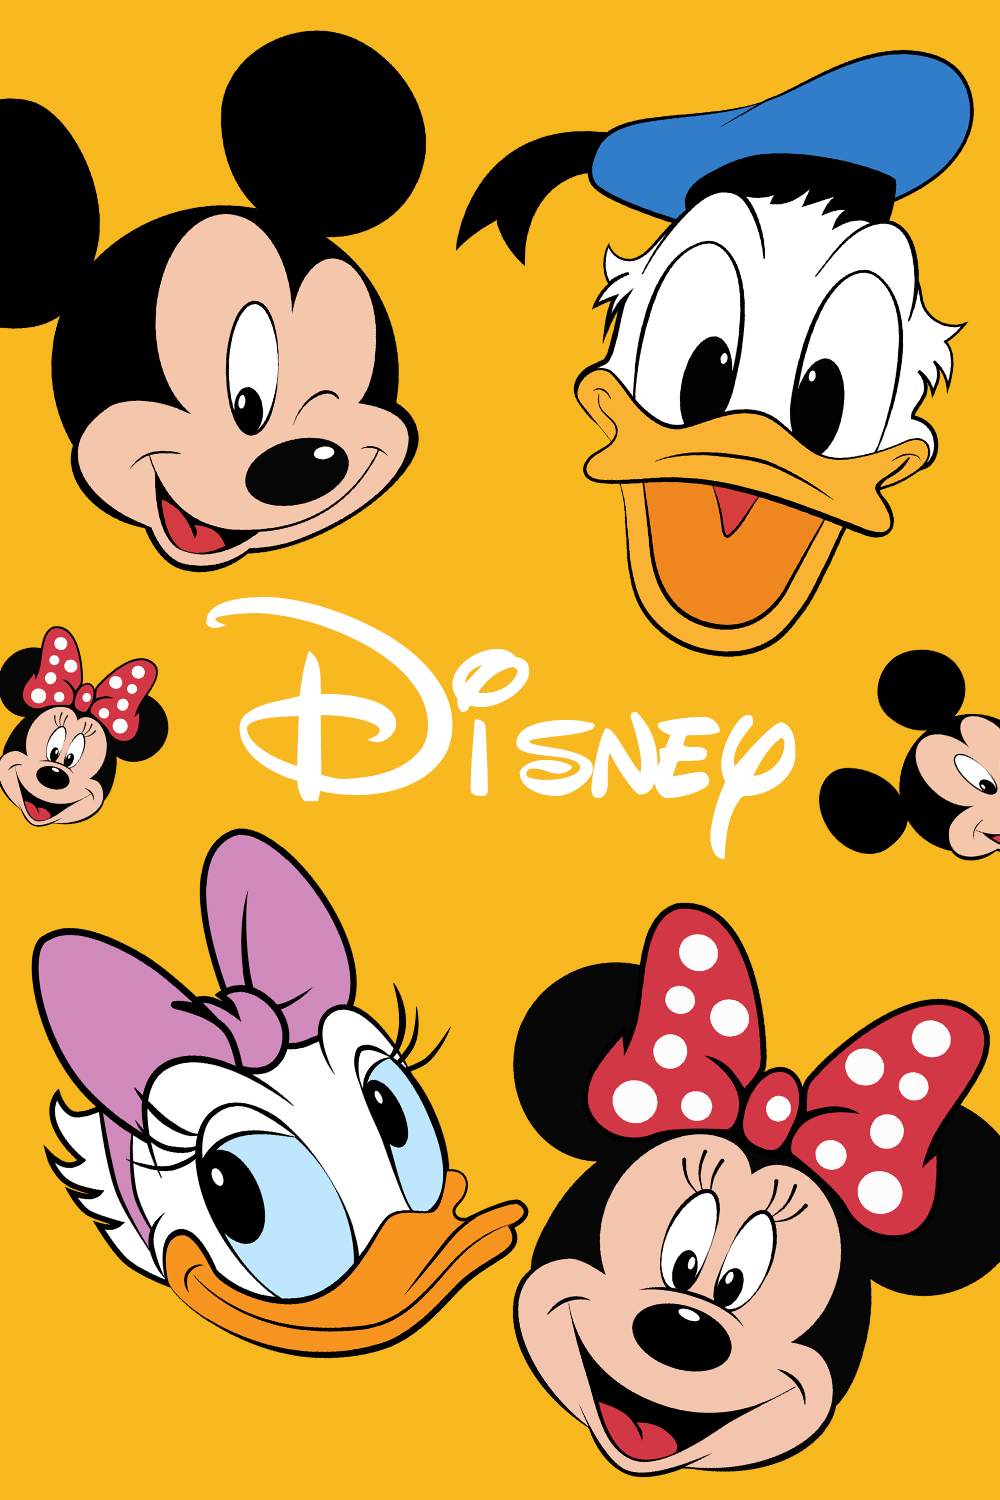 Disney SVG: Donald Duck & Minnie Mouse pinterest image.